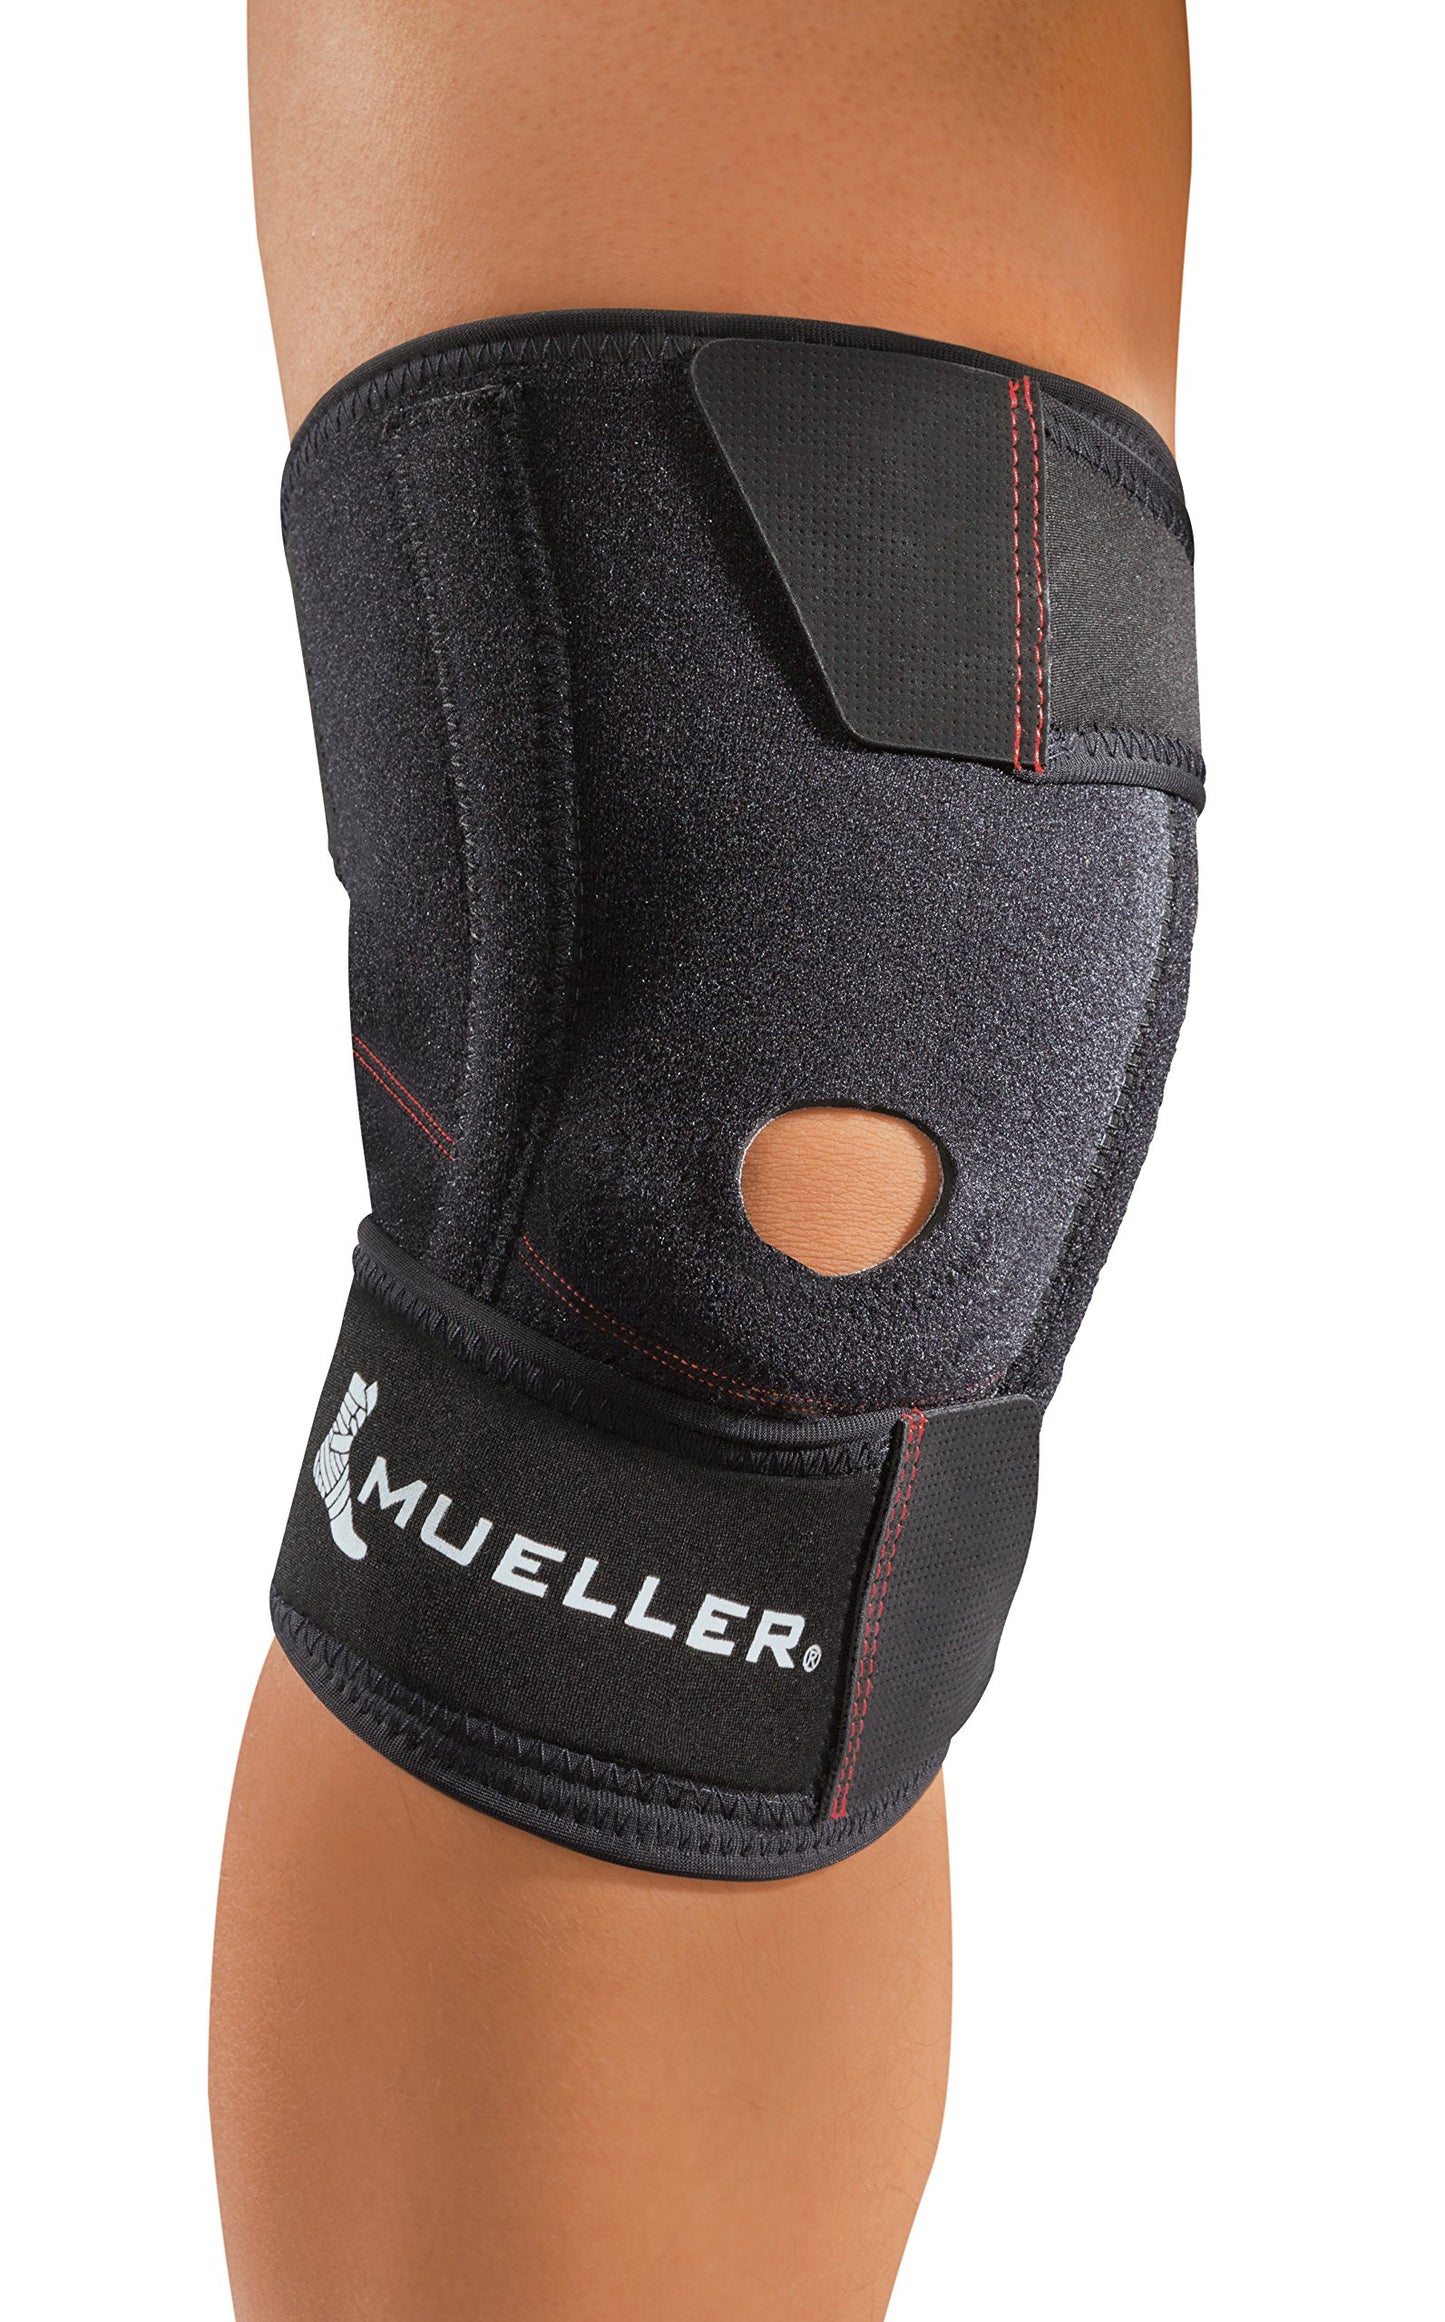 MUELLER Sports Medicine Wraparound Knee Stabilizer, For Men and Women, Black, One Size